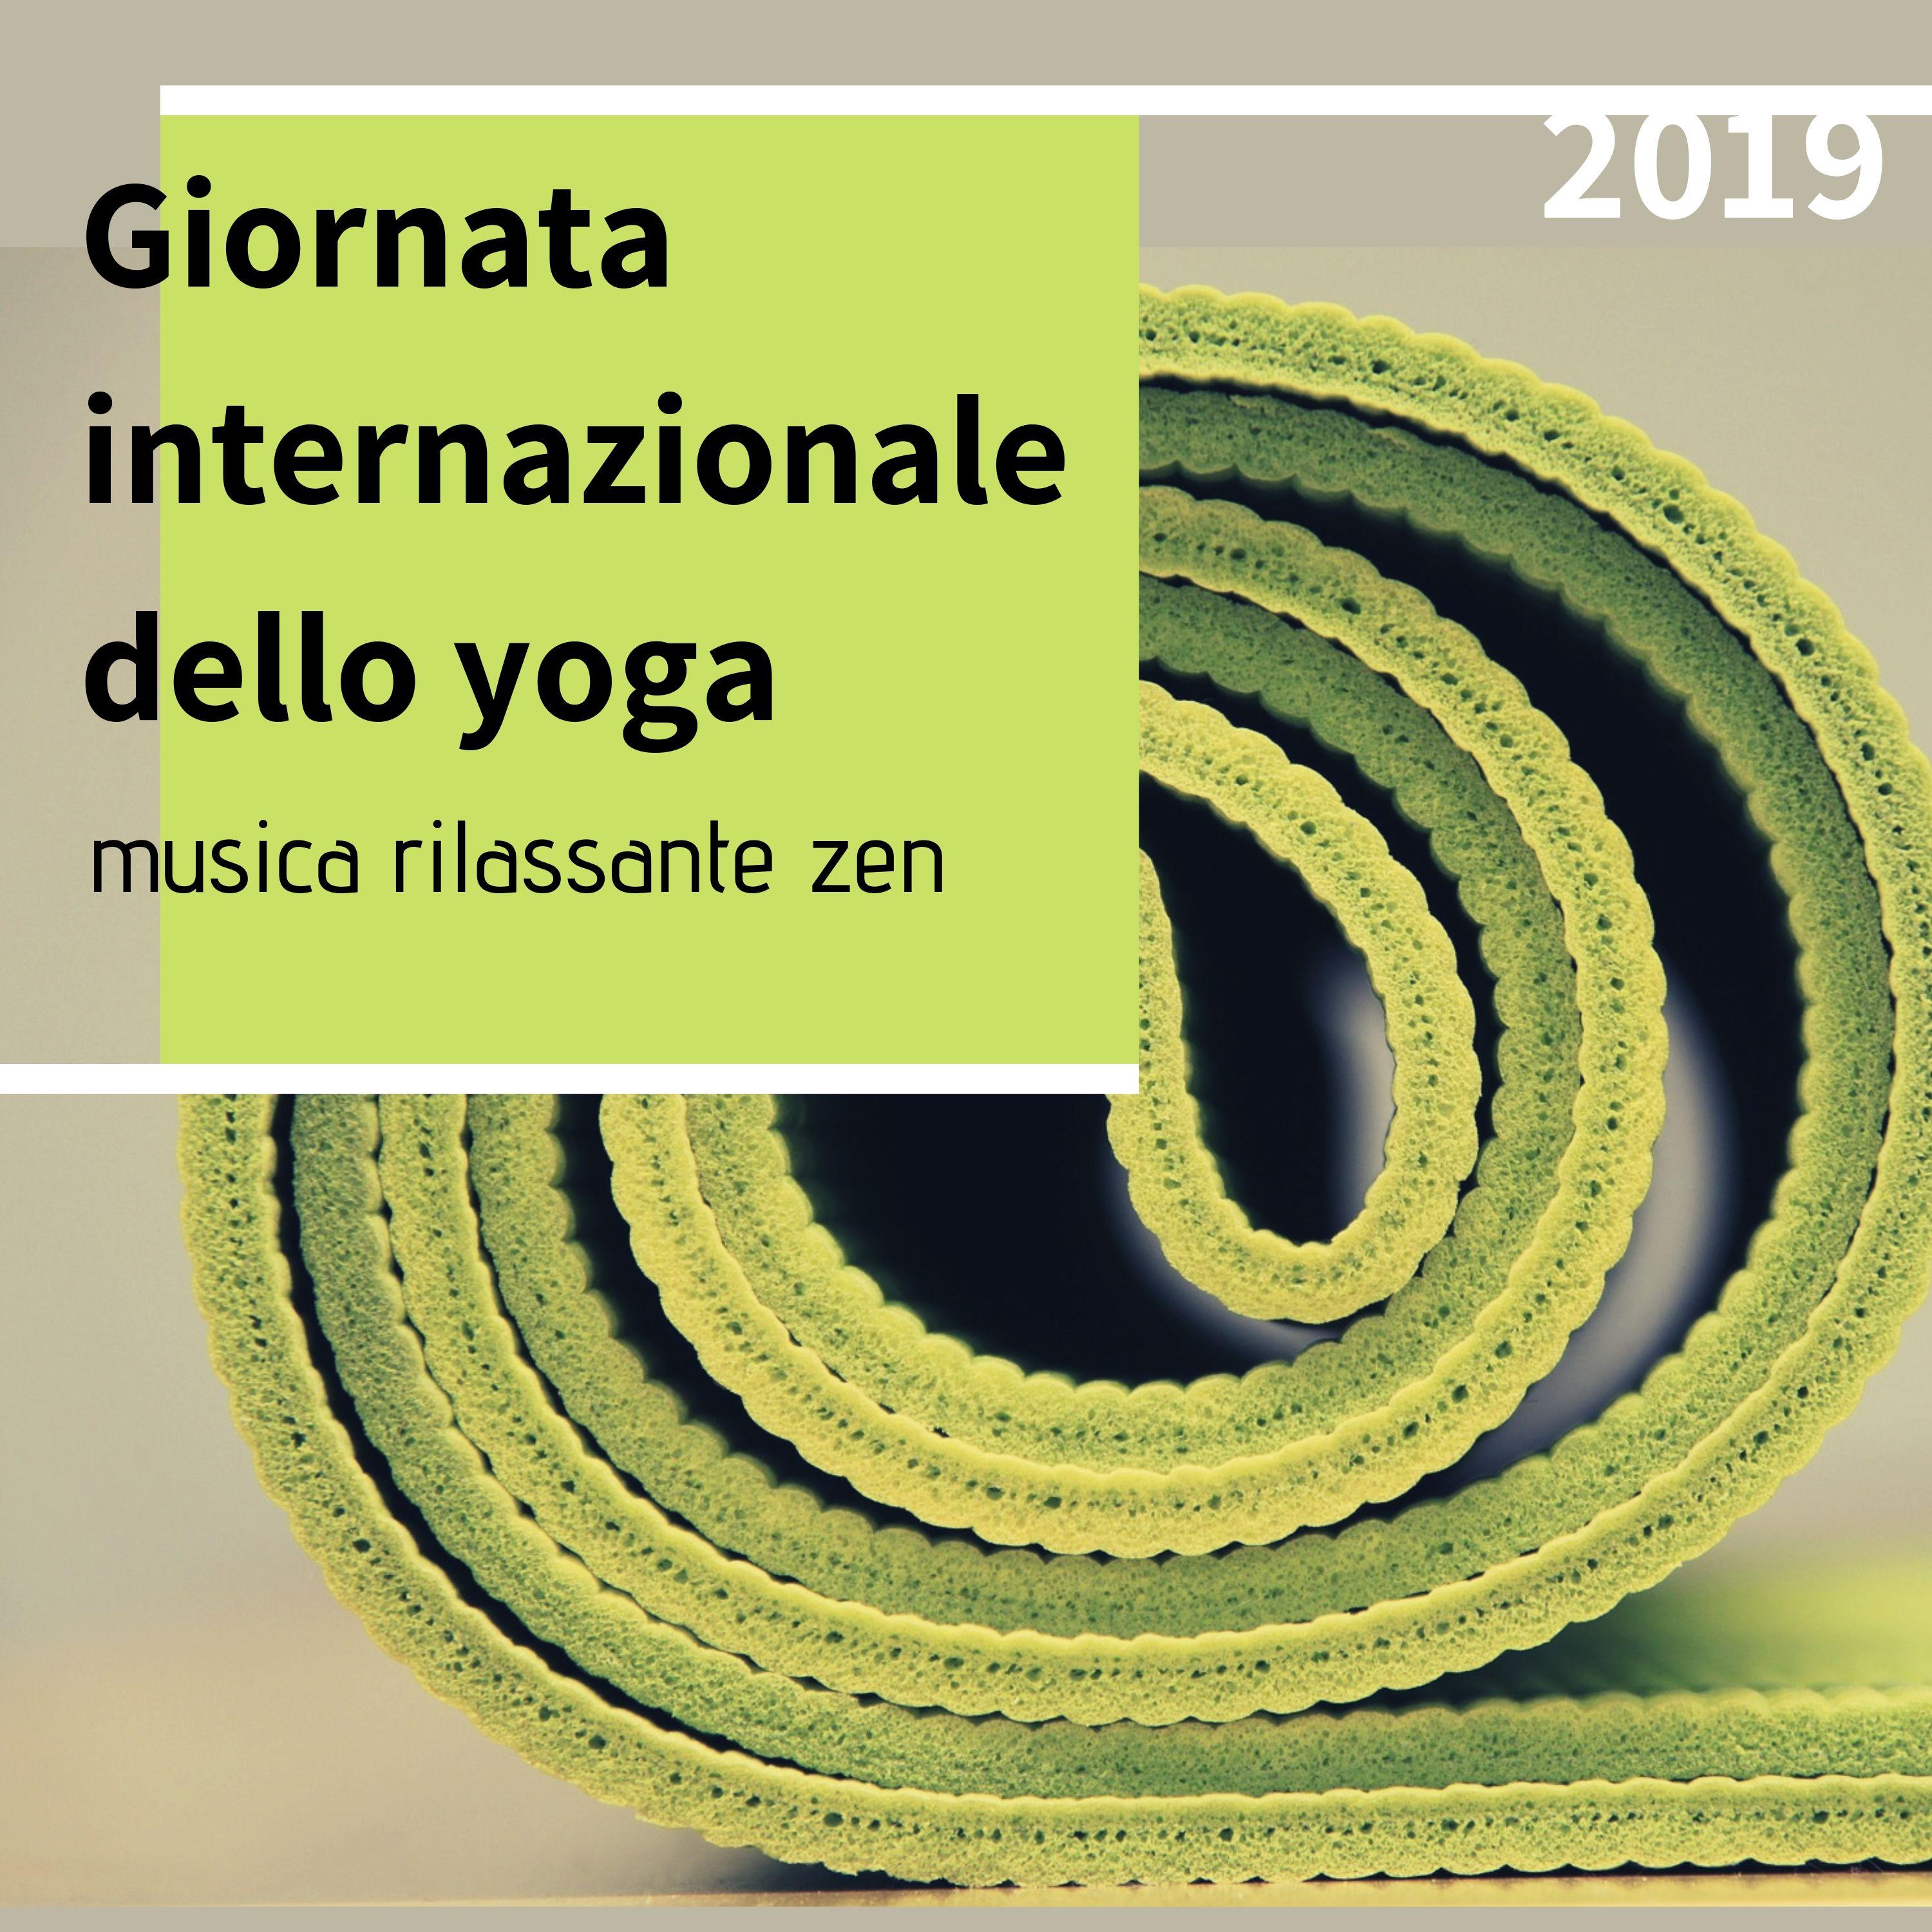 Giornata internazionale dello yoga 2019 - musica rilassante zen